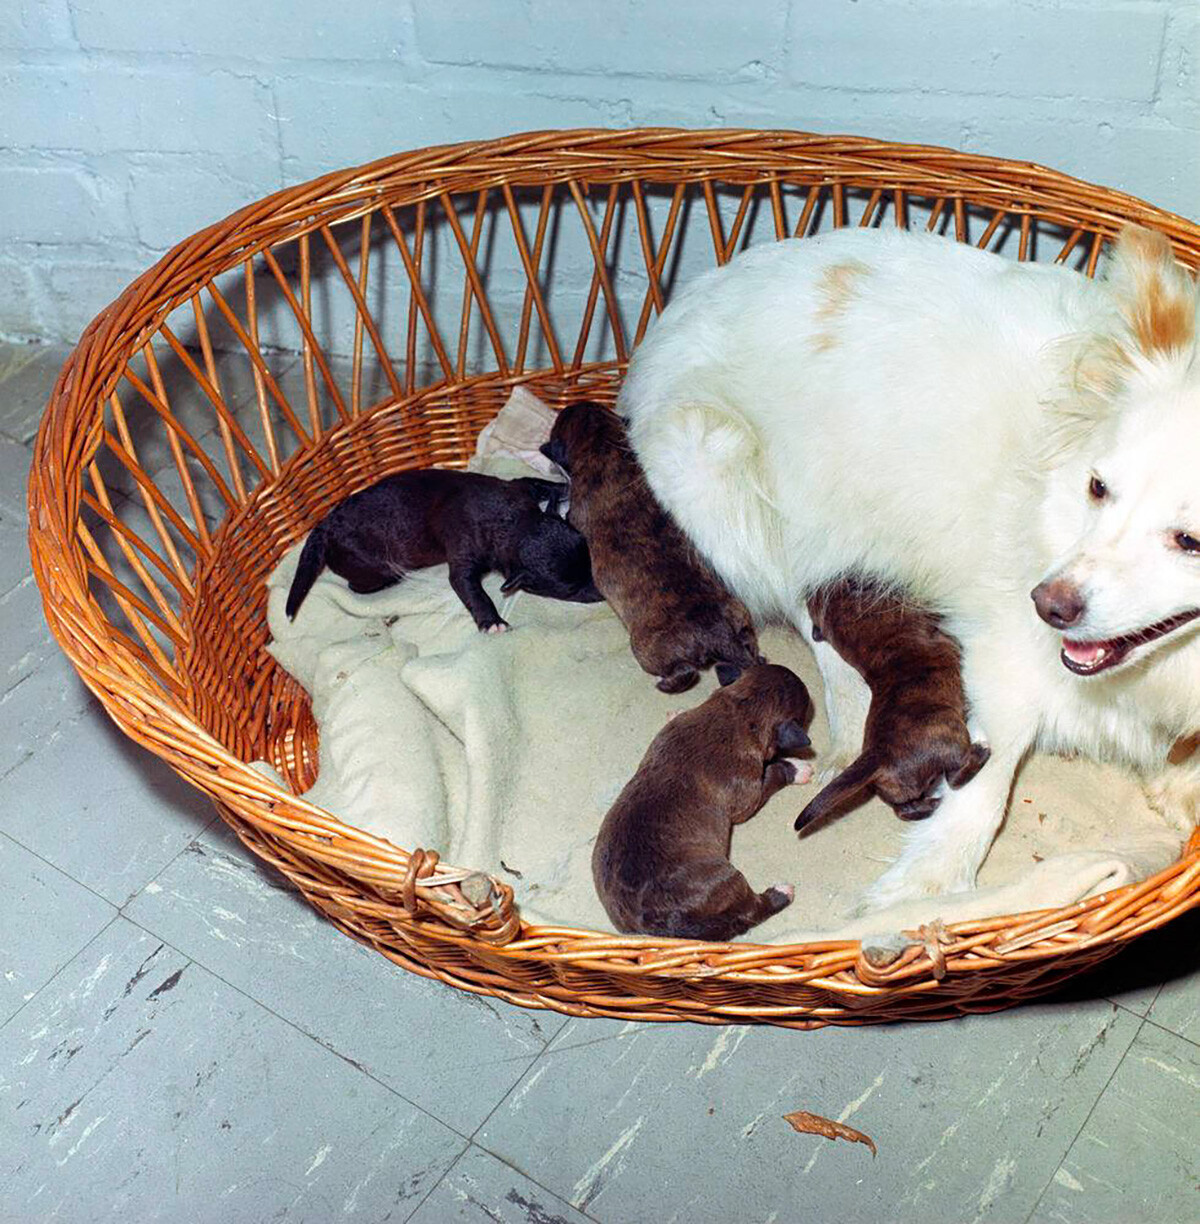 Puschinka (Hund des Weißen Hauses) und ihre vier neugeborene Welpen: Streaker, Butterfly, White Tips und Blackie.